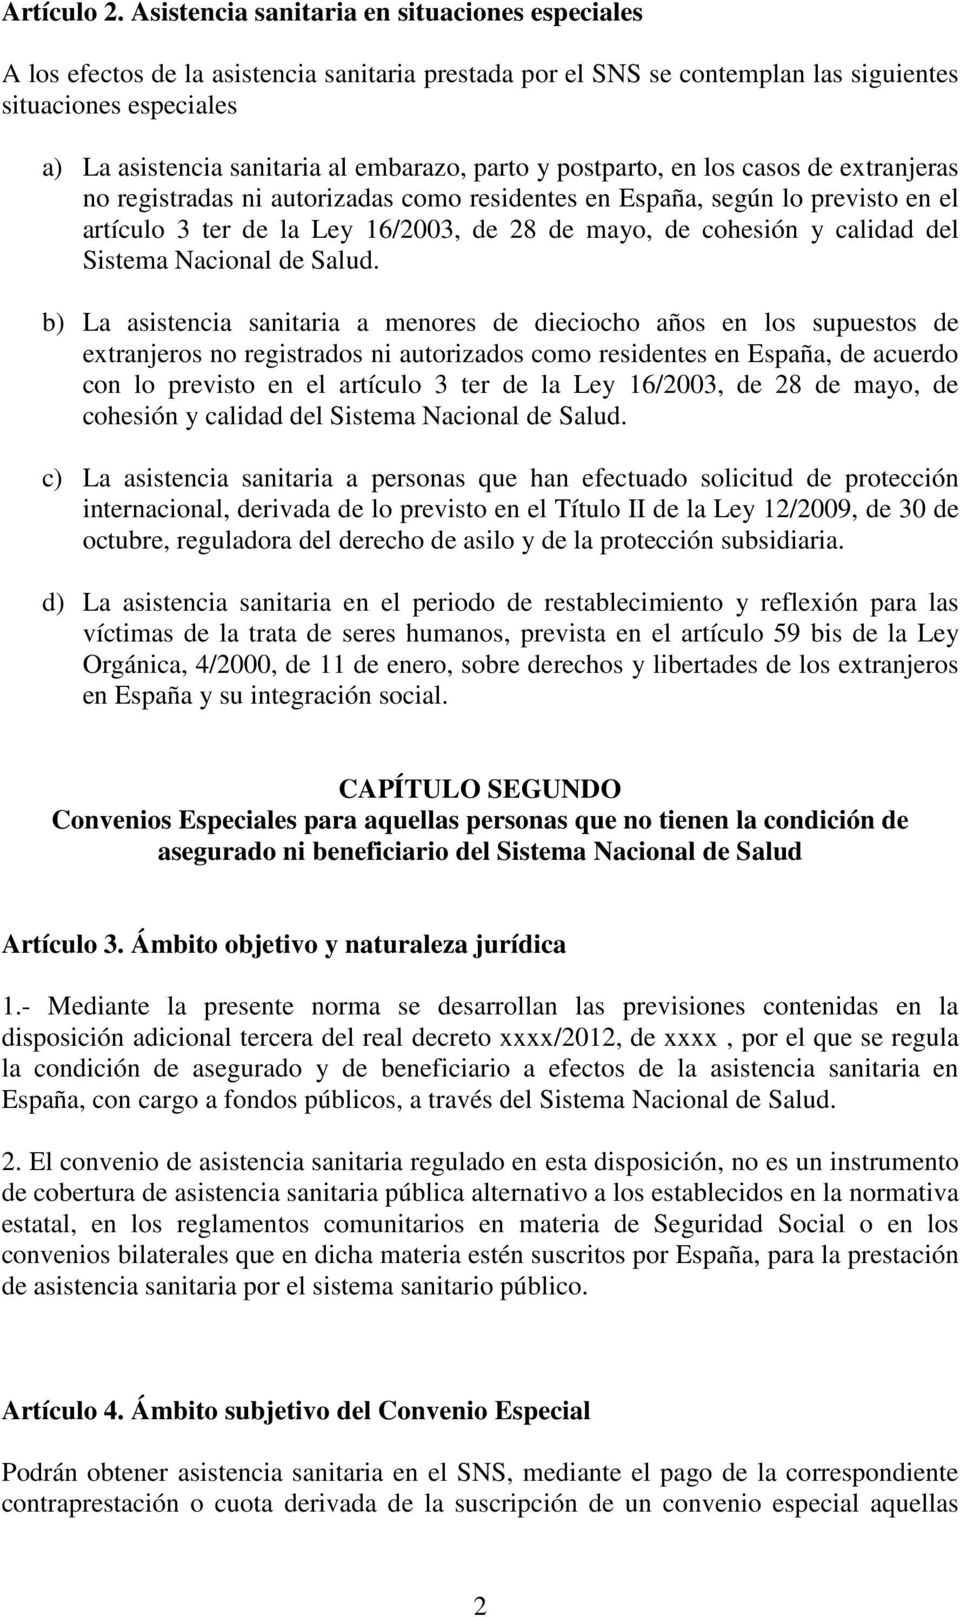 parto y postparto, en los casos de extranjeras no registradas ni autorizadas como residentes en España, según lo previsto en el artículo 3 ter de la Ley 16/2003, de 28 de mayo, de cohesión y calidad